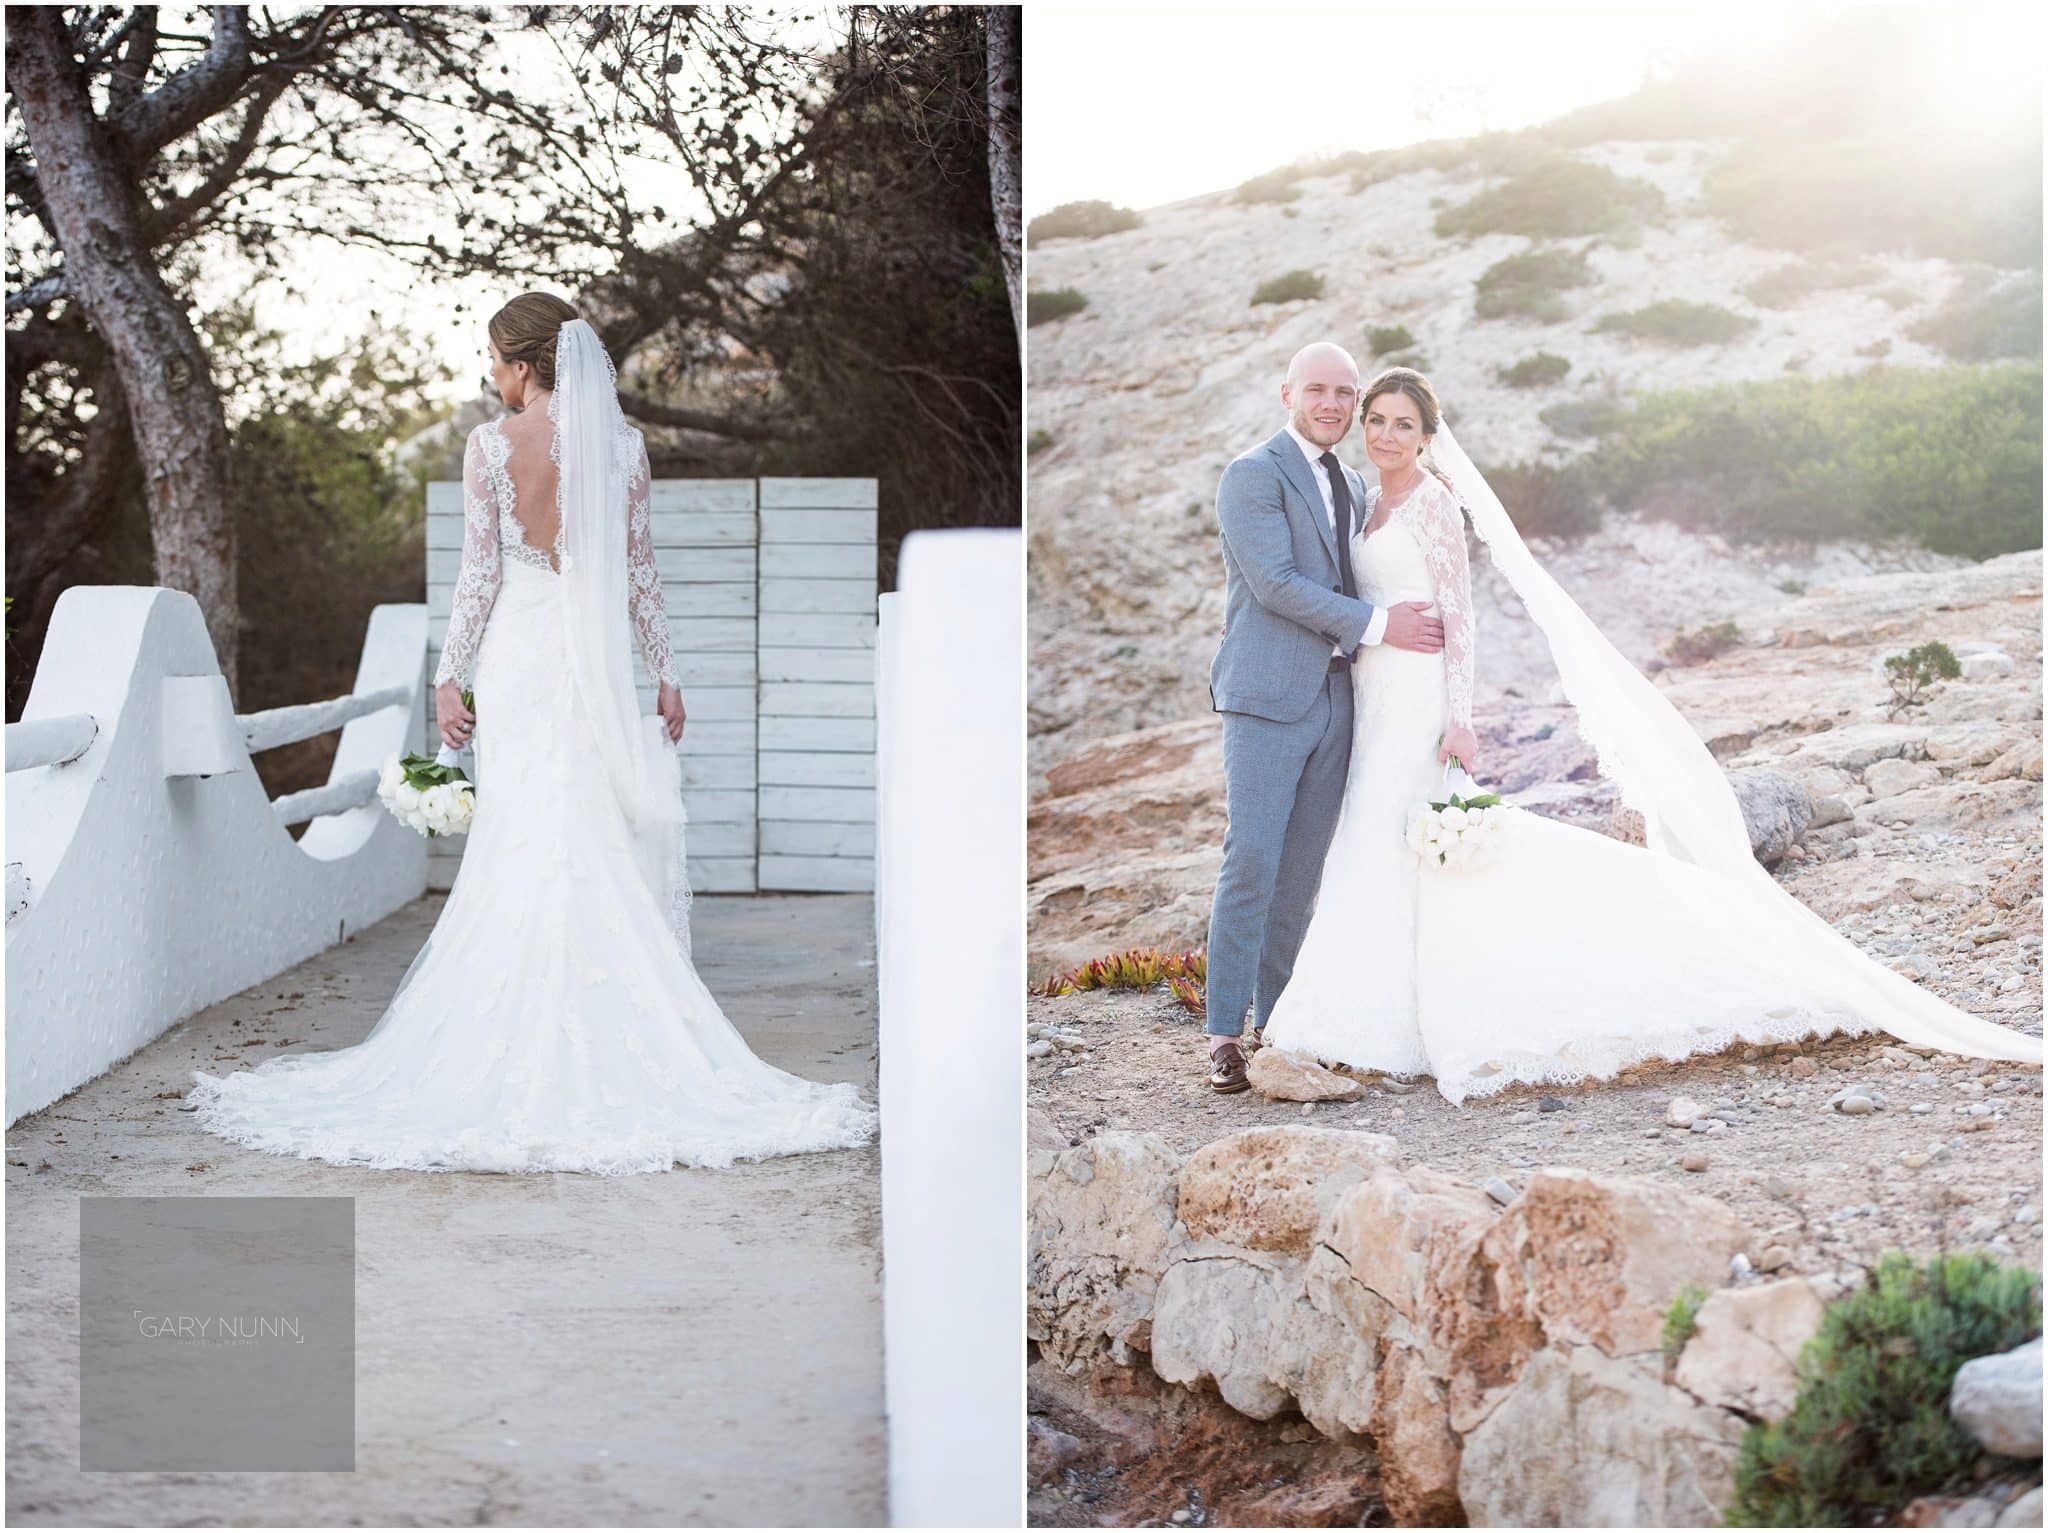 Weddings Abroad, destination wedding photographer, wedding photographer milton keynes